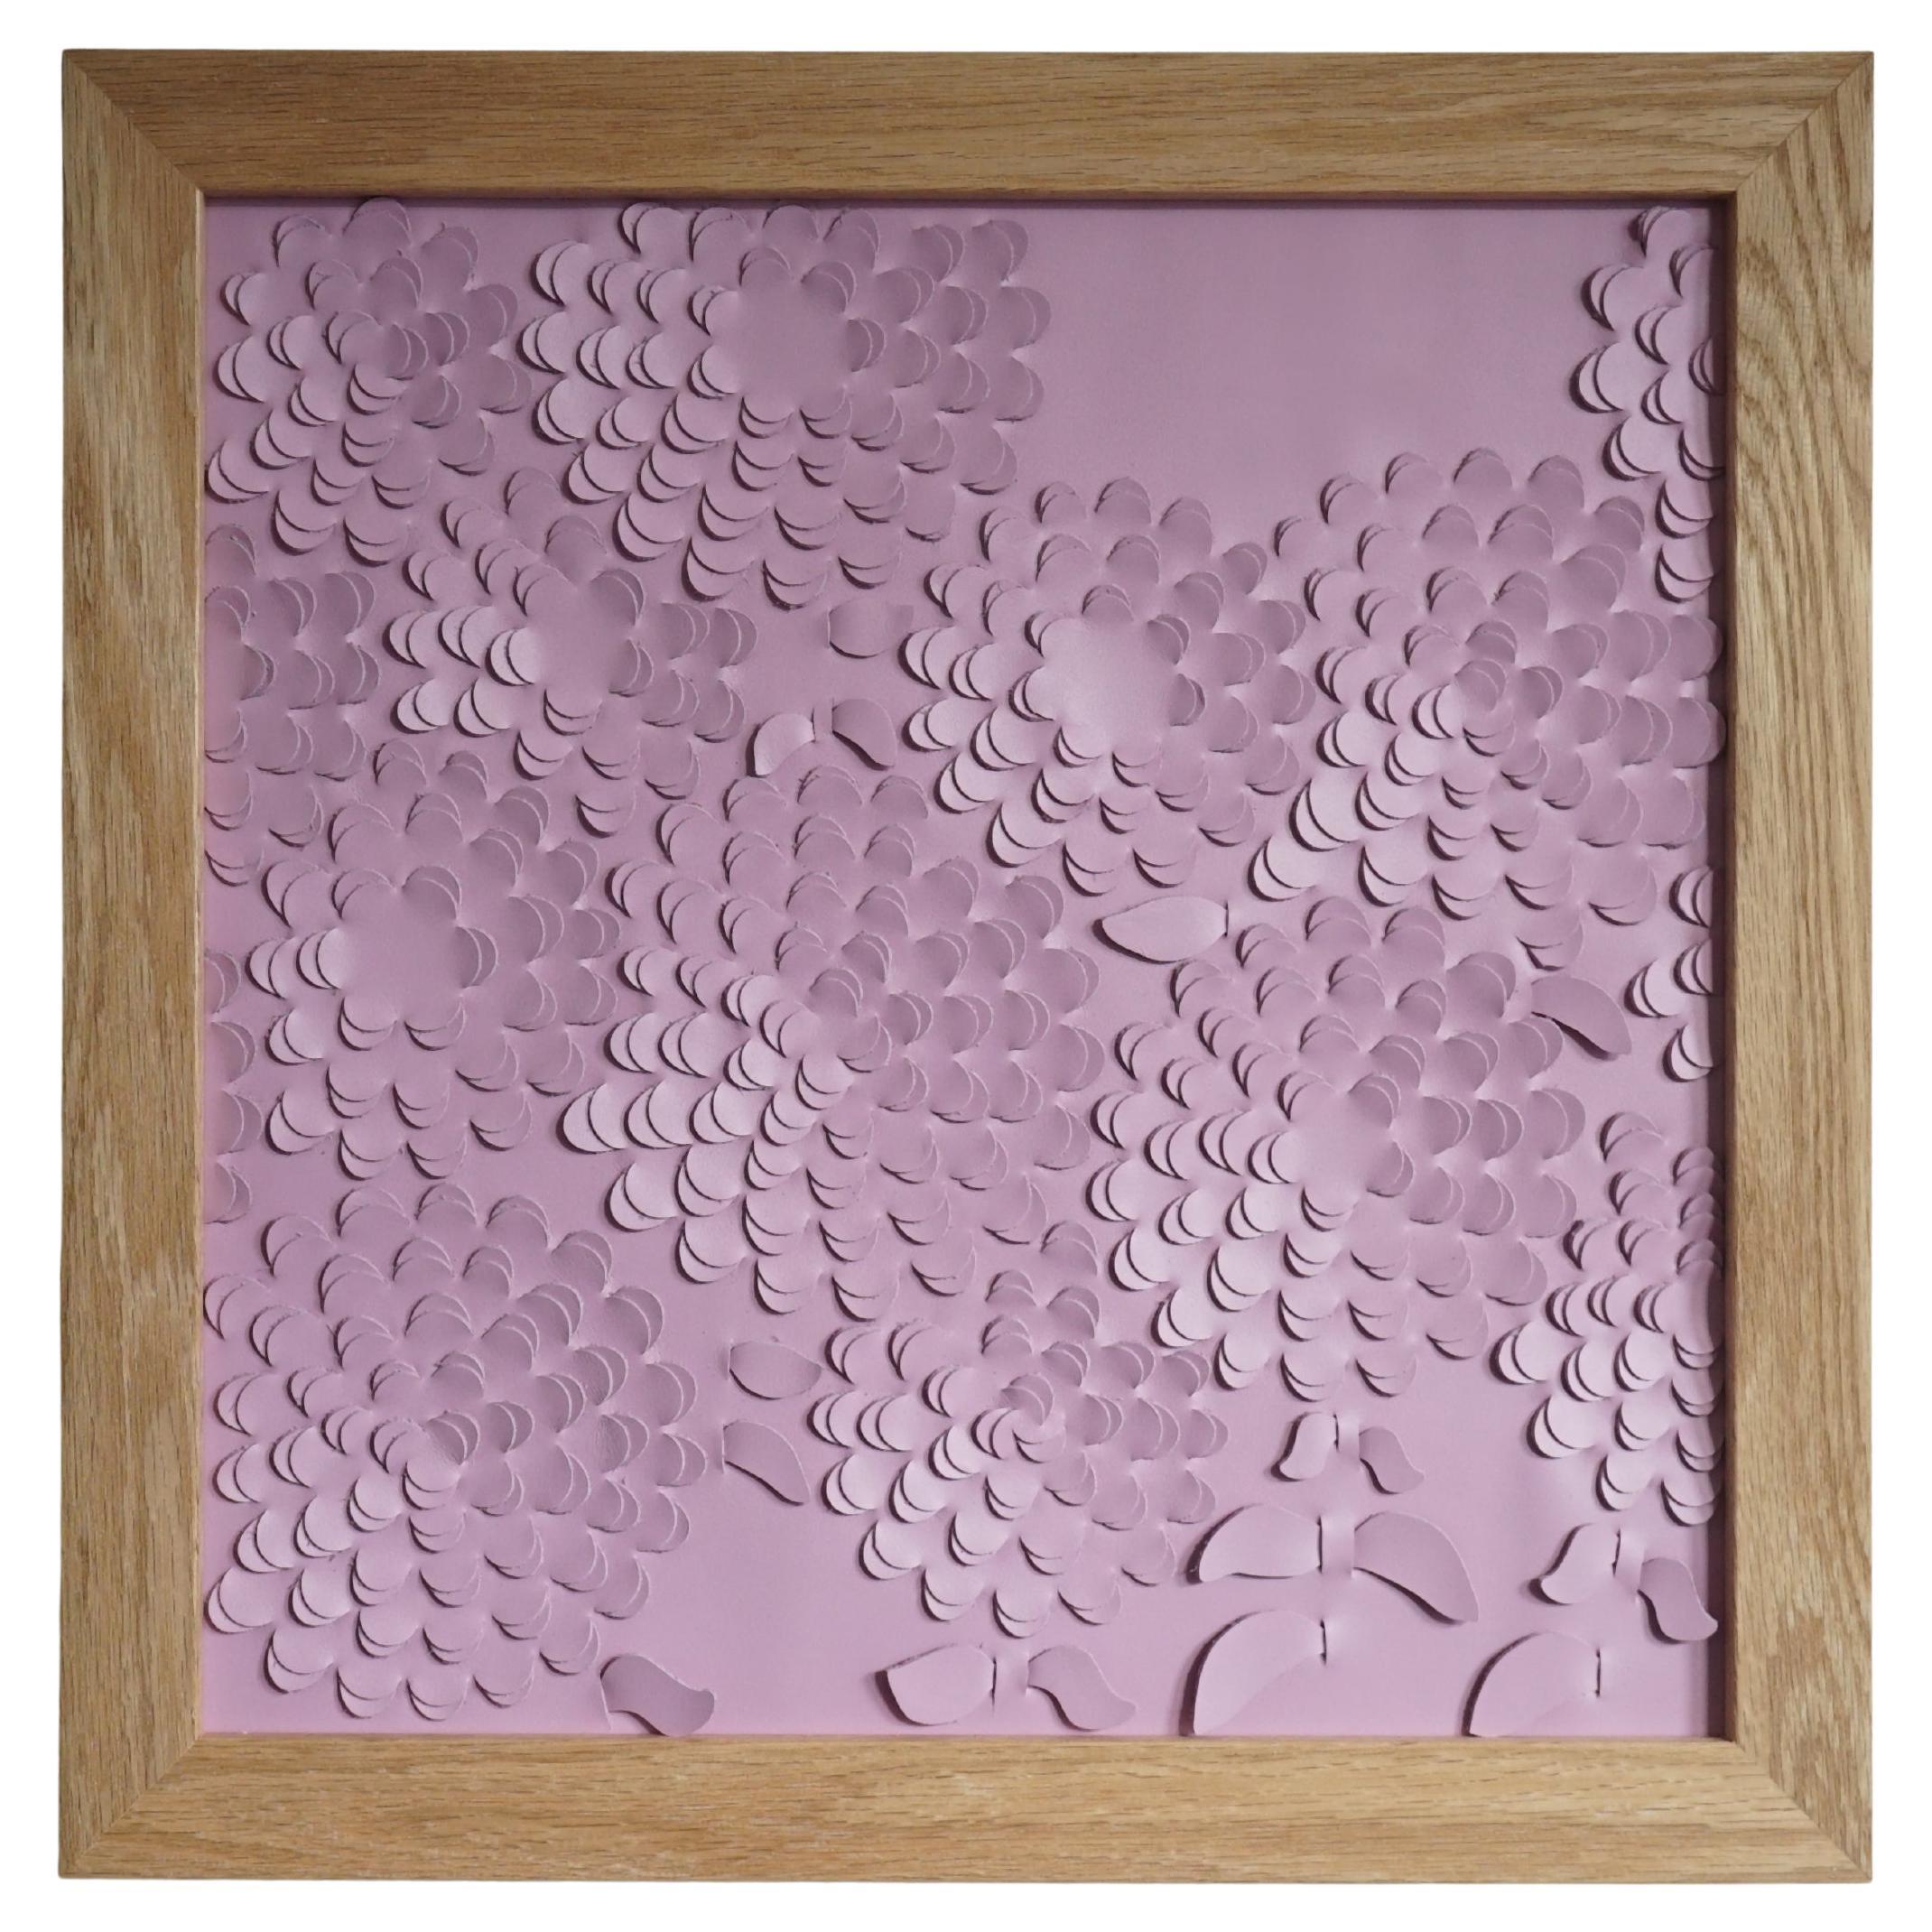 Chrysantheme:

Eine 3D-Wandskulptur, die von Louise Heighes aus zwei Lagen rosa Leder gewebt wurde.
Die Maße sind 17 x 17 Zoll oder 43 x 43 cm

Dieses Stück ist inspiriert von der großen Masse an sich wiederholenden Blütenblättern der Chrysantheme